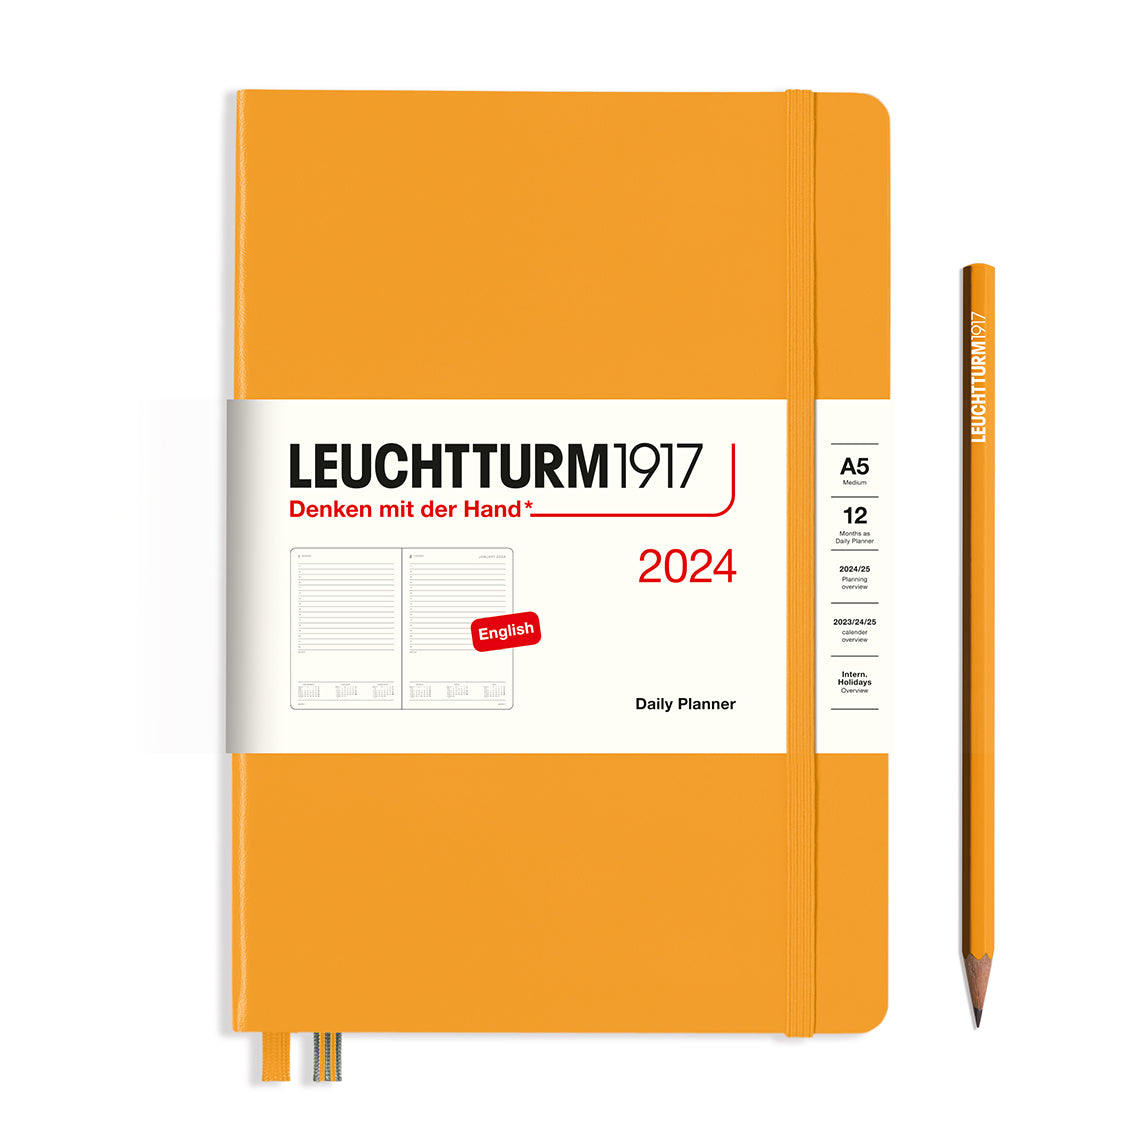 Leuchtturm Daily Planner - Medium (A5) 5 3/4" x 8 1/4"